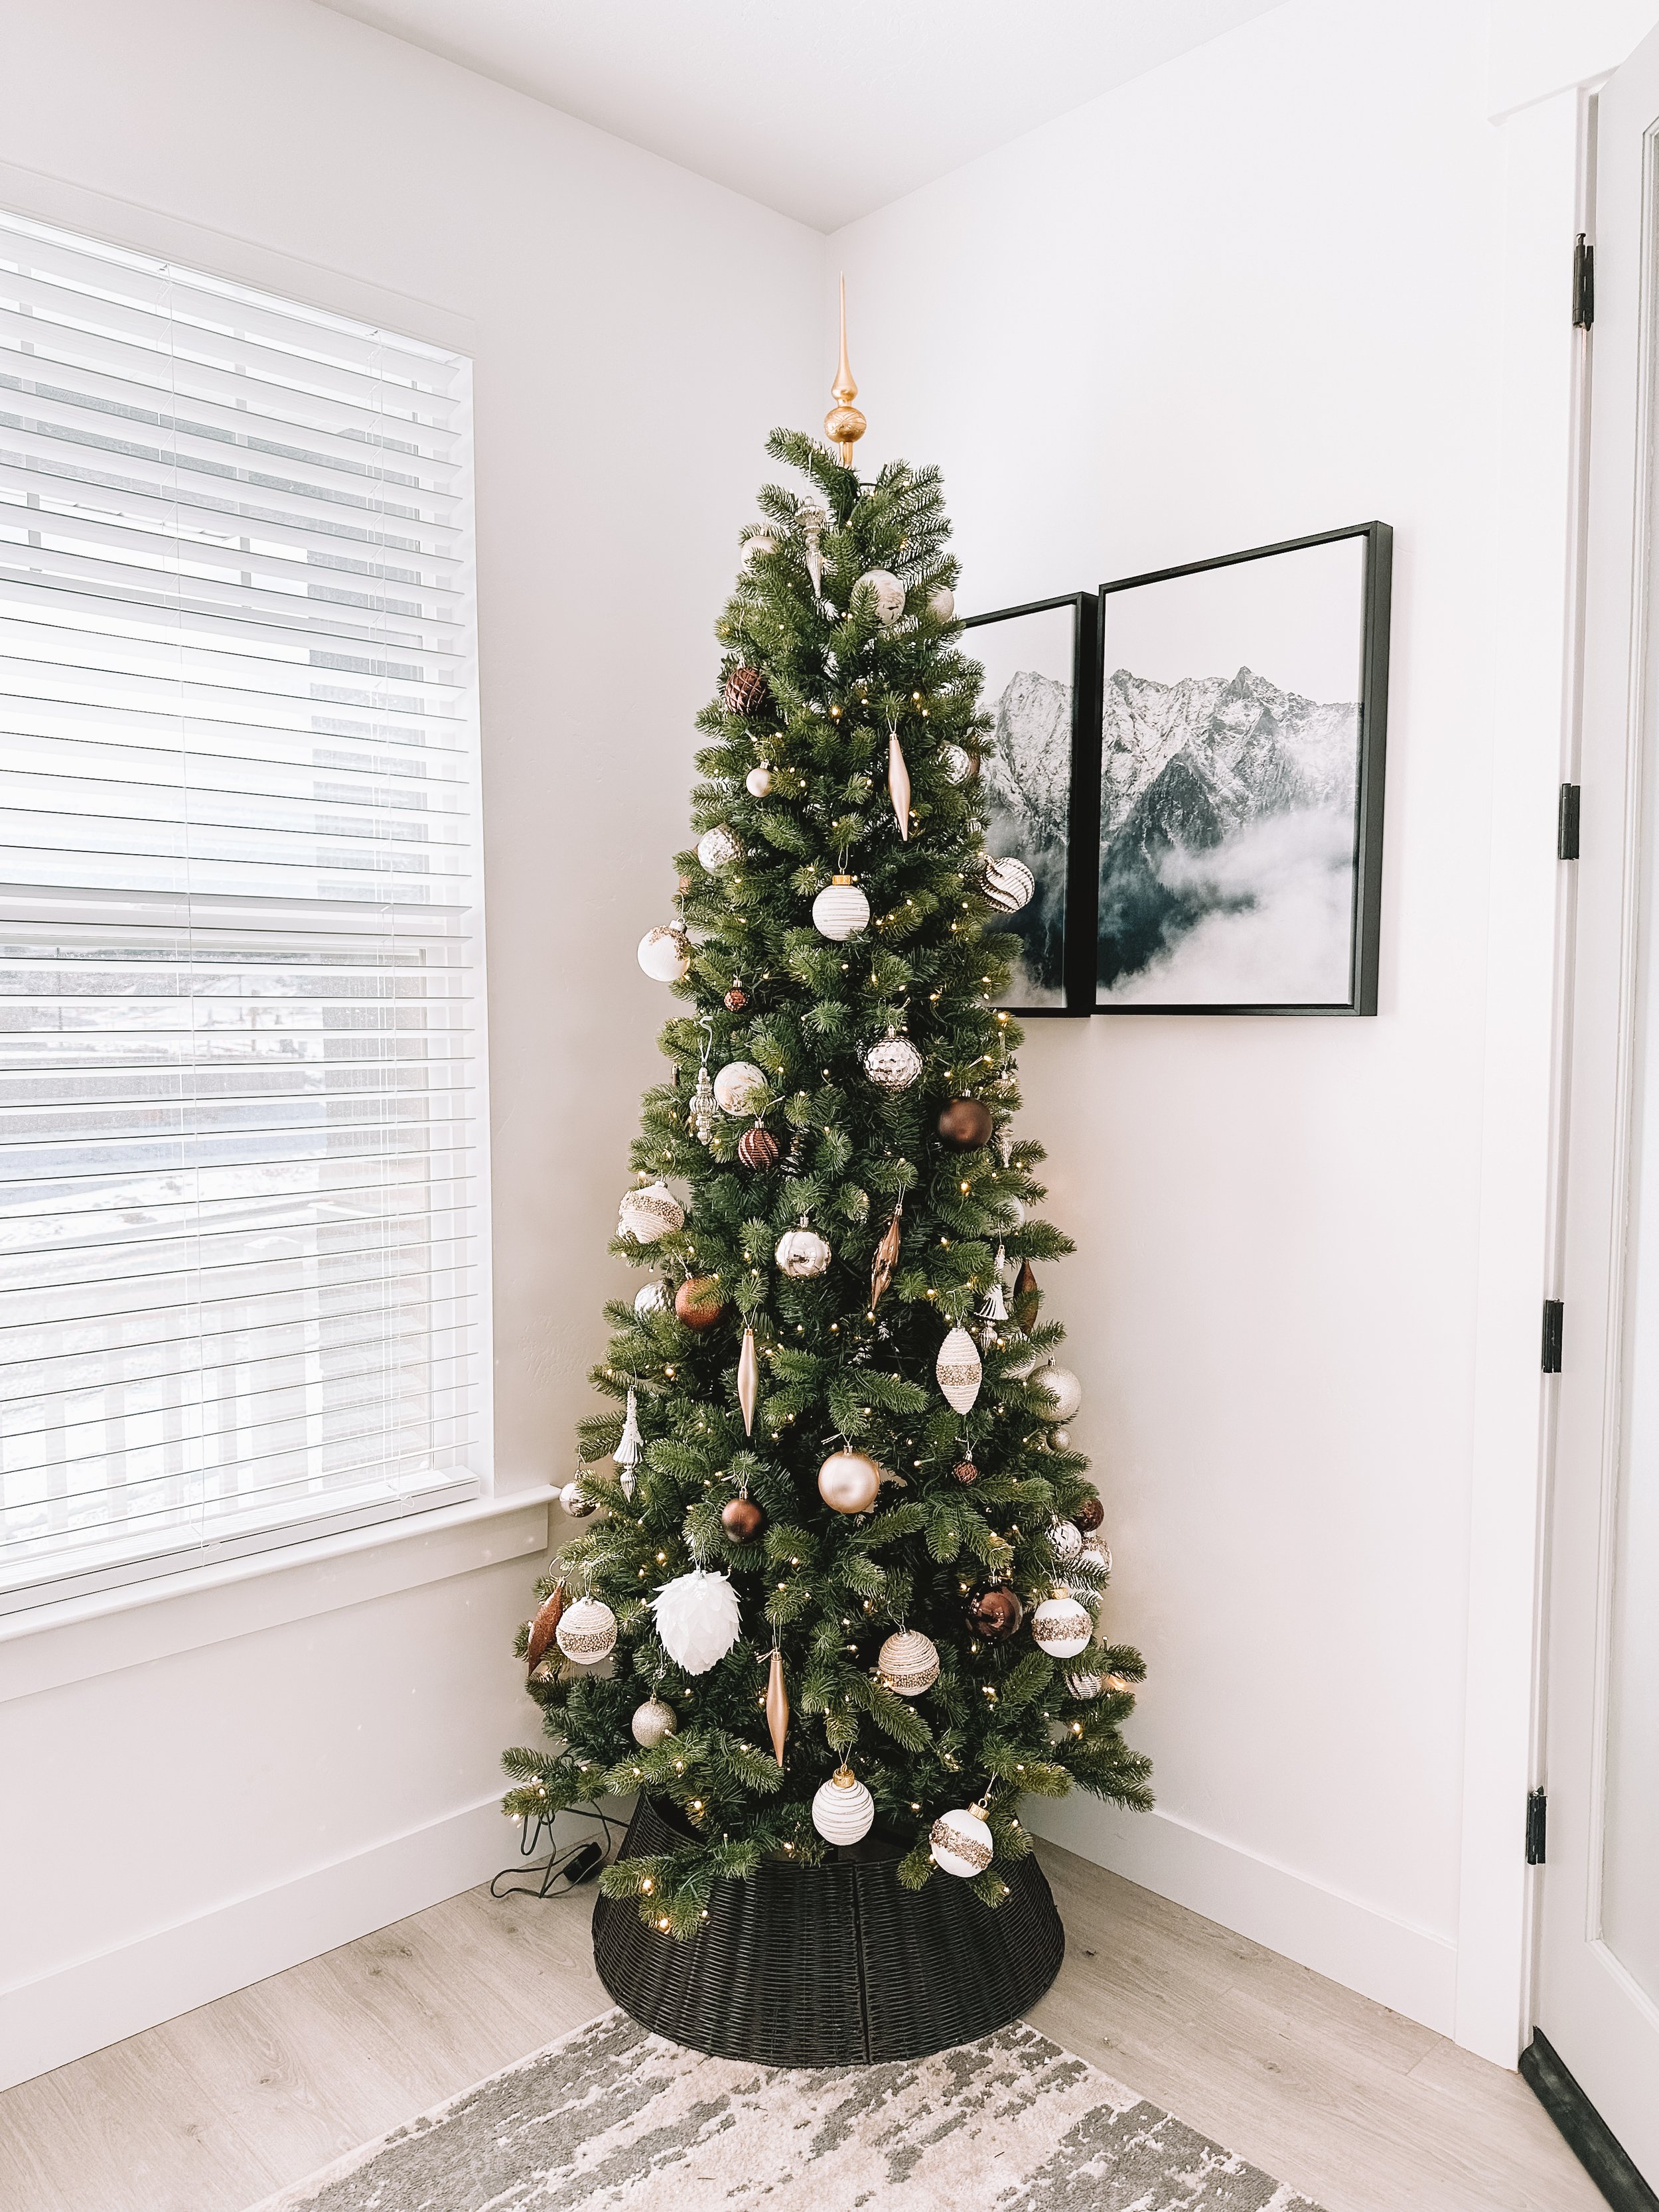 King of Christmas - Christmas Tree Home Decorations